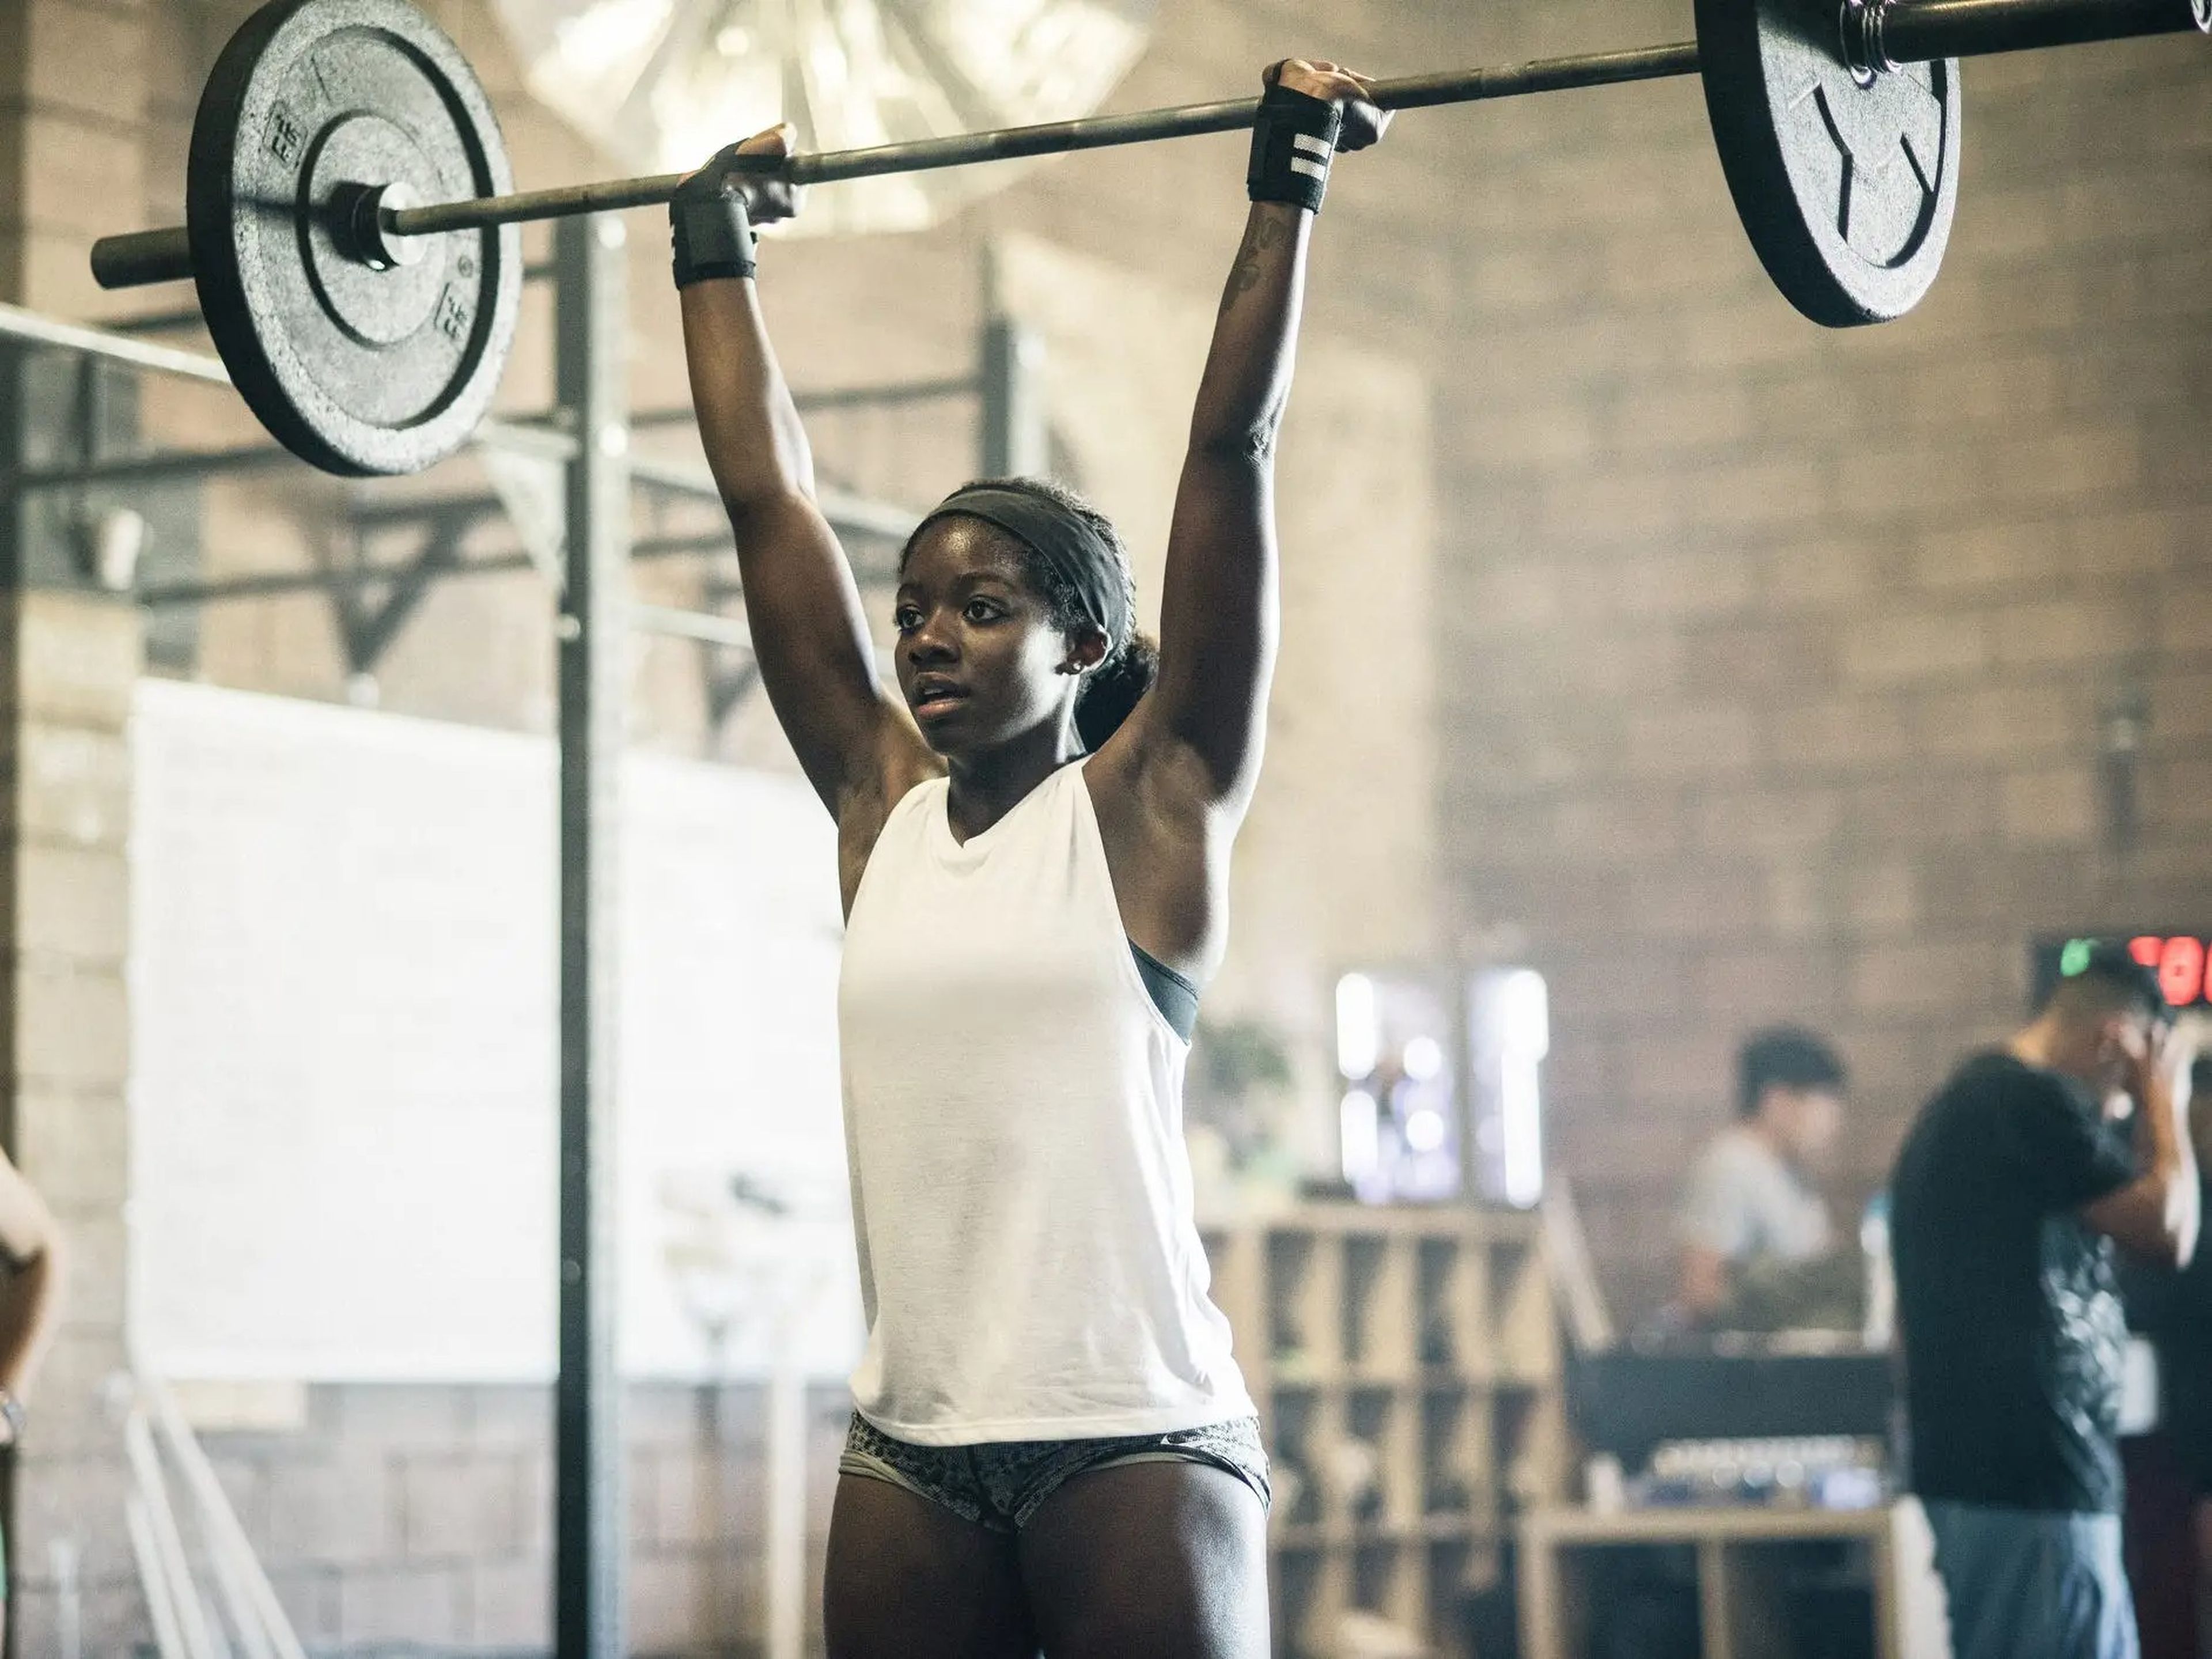 El entrenamiento de fuerza es excelente para desarrollar músculo, pero varios errores comunes pueden ralentizar tu progreso.